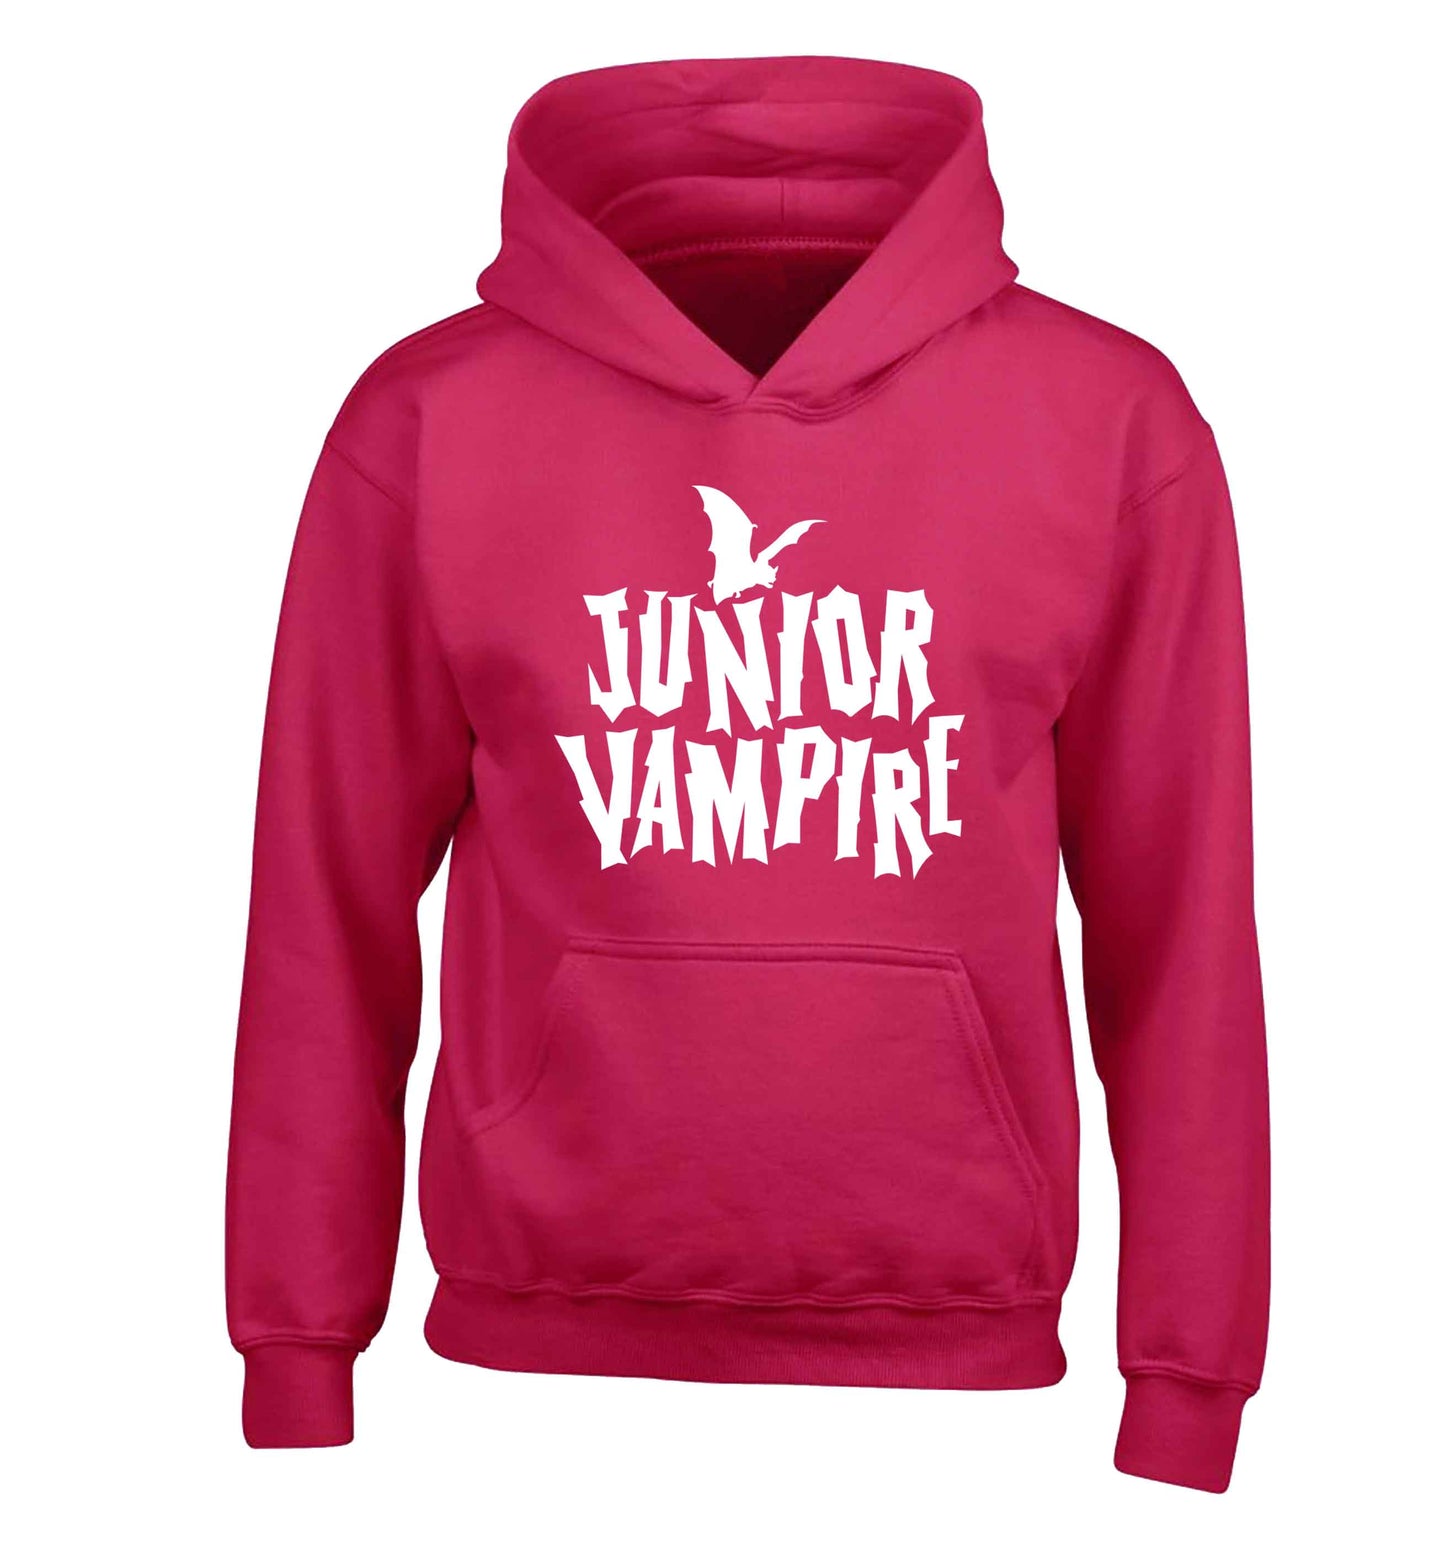 Junior vampire children's pink hoodie 12-13 Years